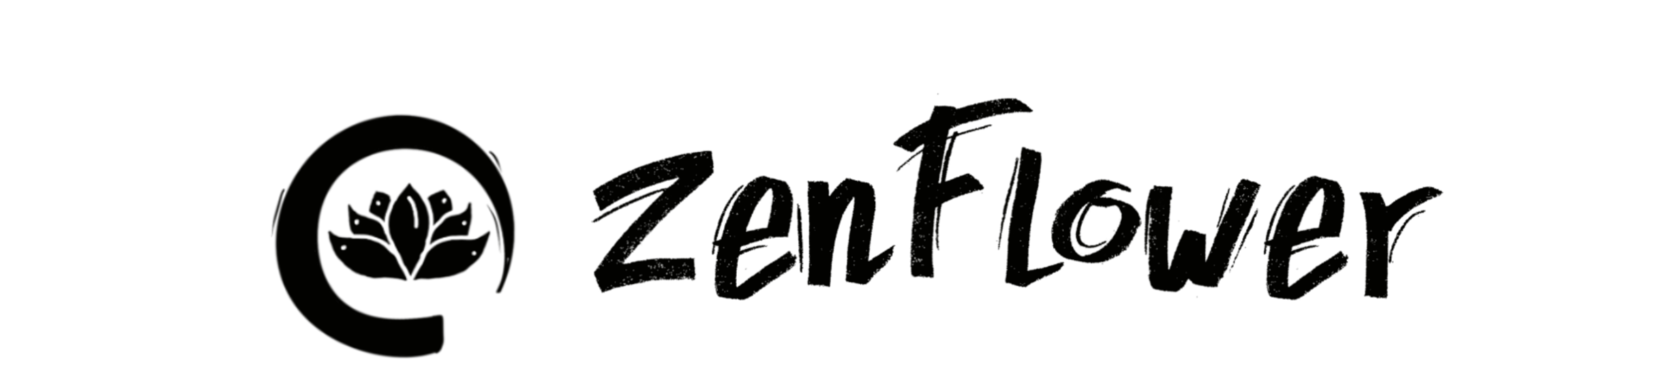 Zenflower